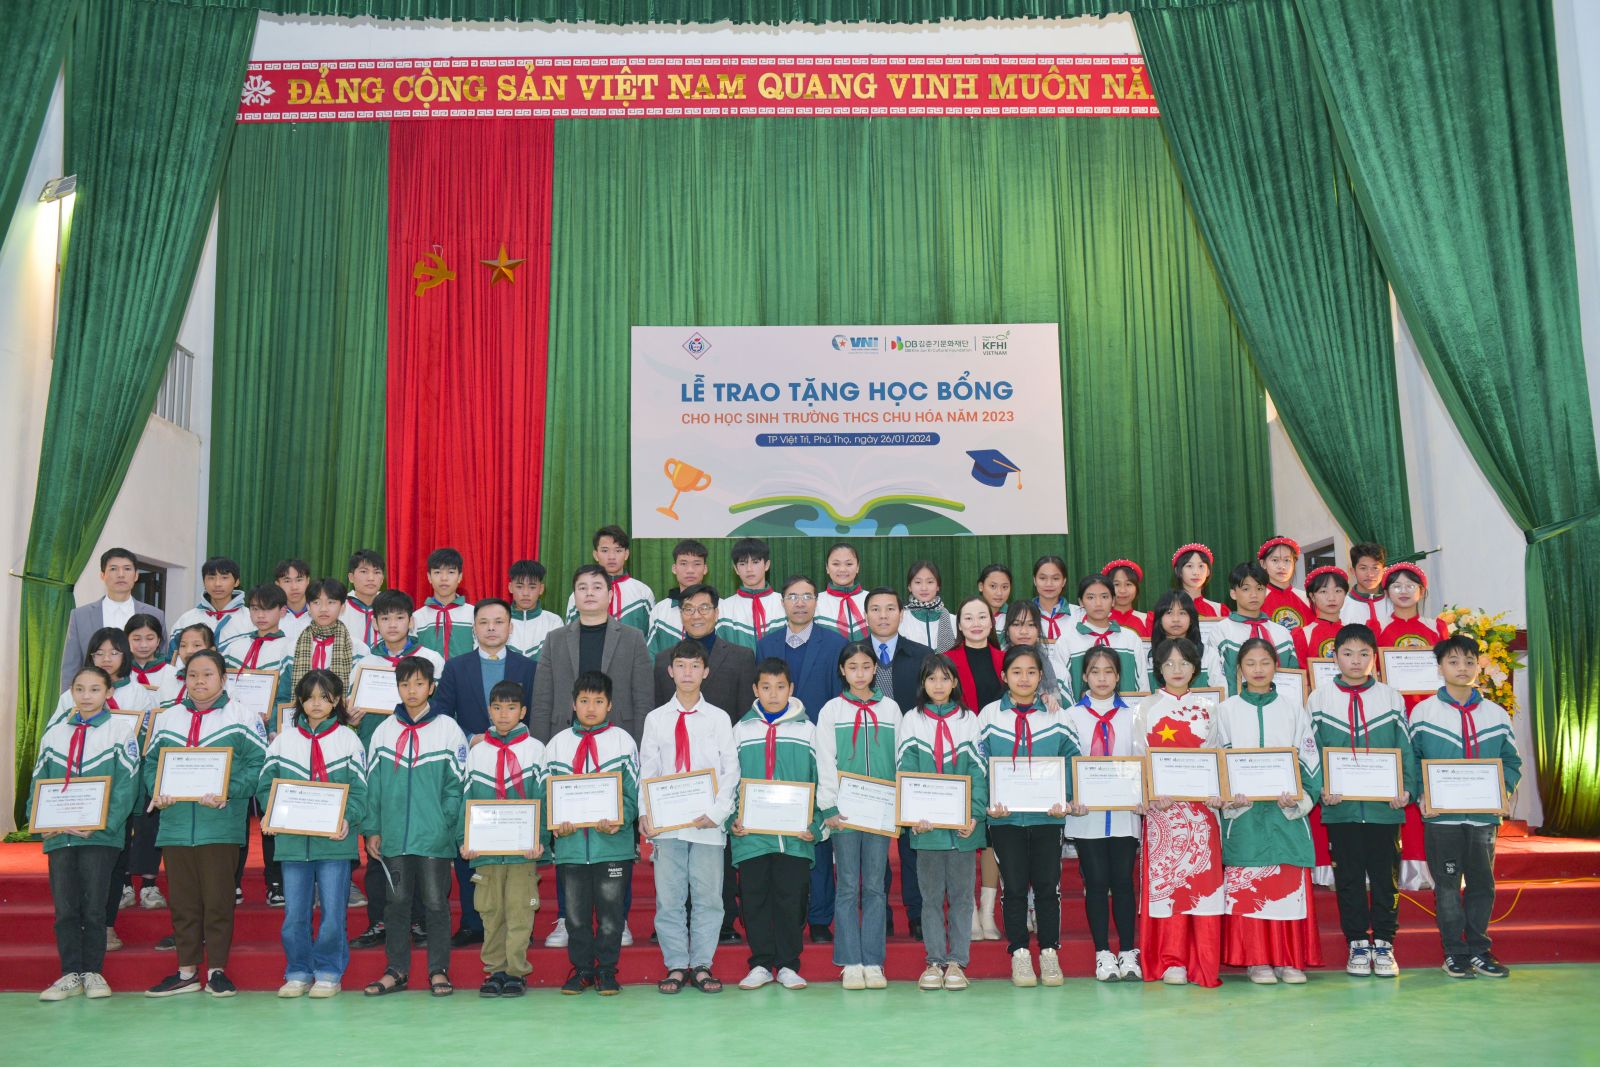 Đại diện VNI, Tổ chức KFHI Việt Nam trao 48 suất học bổng cho học sinh trường THCS Chu Hóa, TP Việt Trì, Phú Thọ